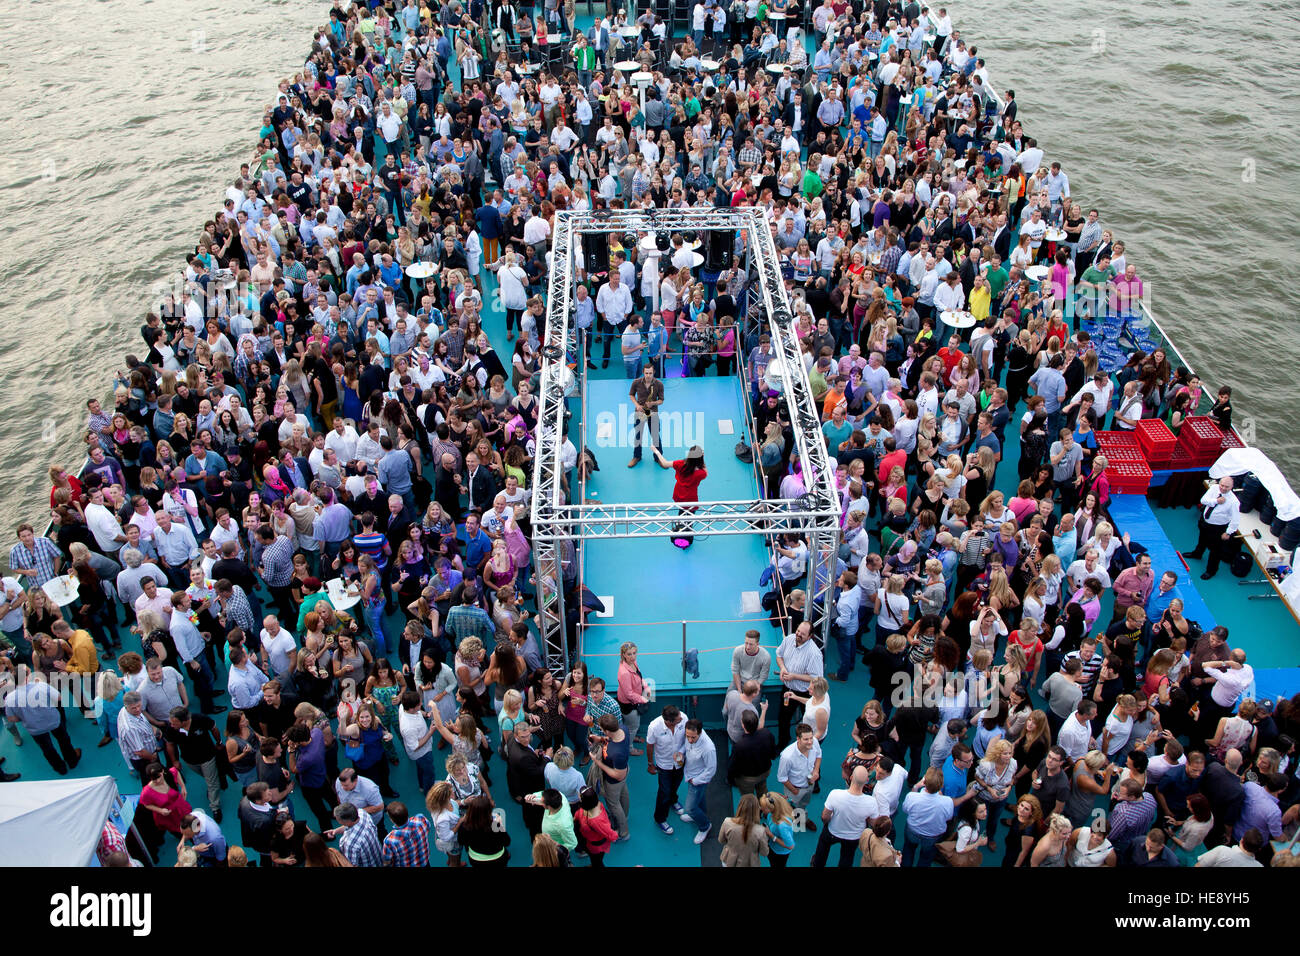 Alemania, Colonia, gente en el barco RheinEnergie eventos Foto de stock